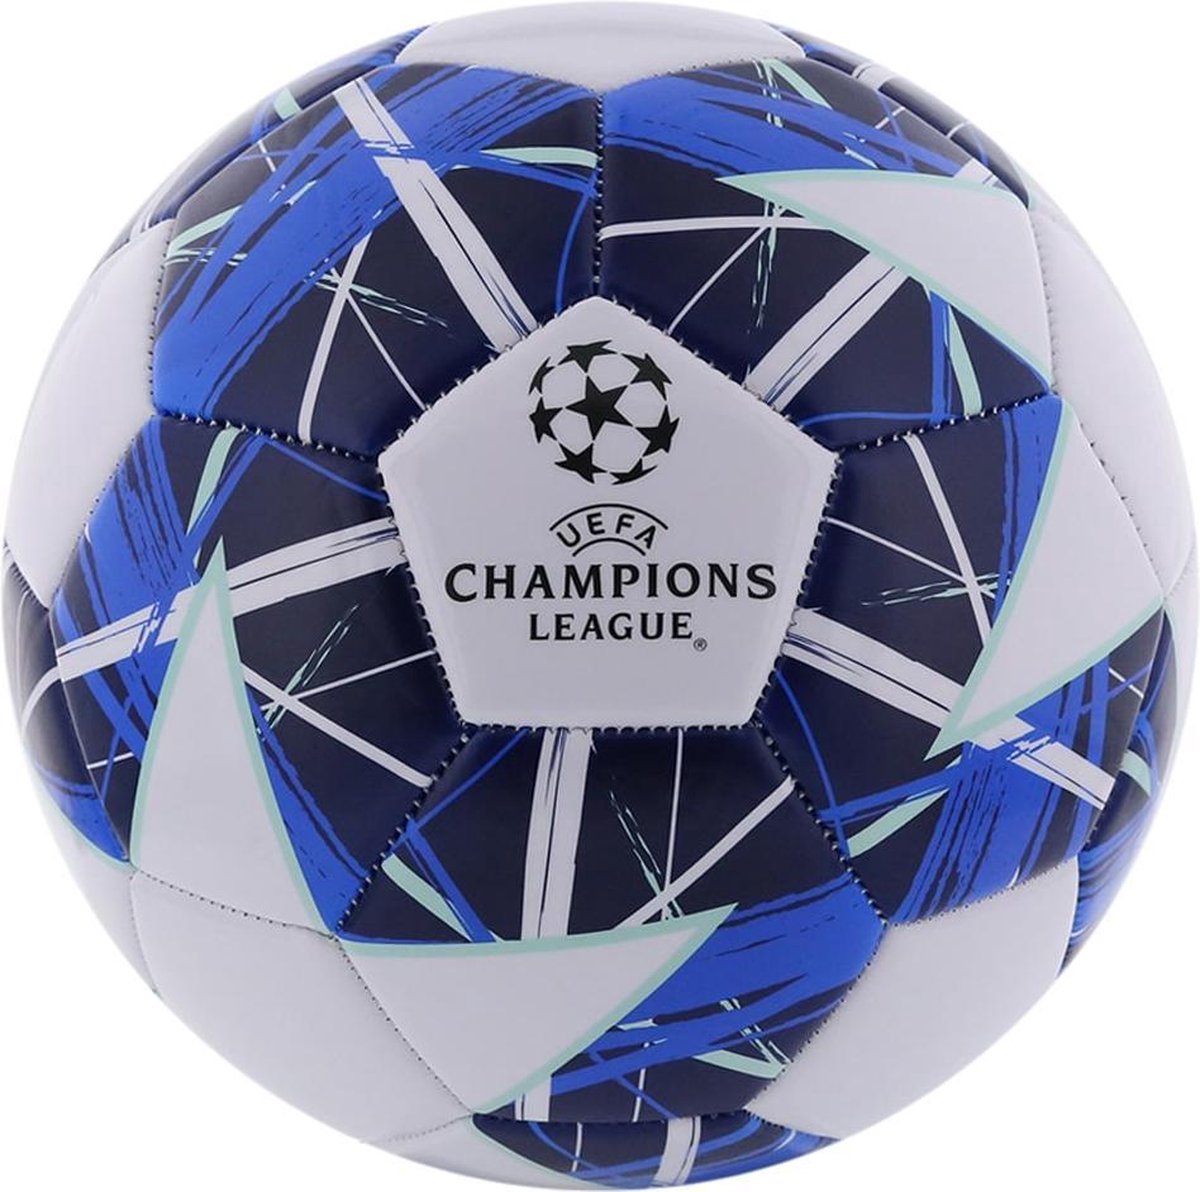 Adidas Champions League bal #2 - maat 5 (standaard) - voetbal - kids - maat 5 - Geen sportclub